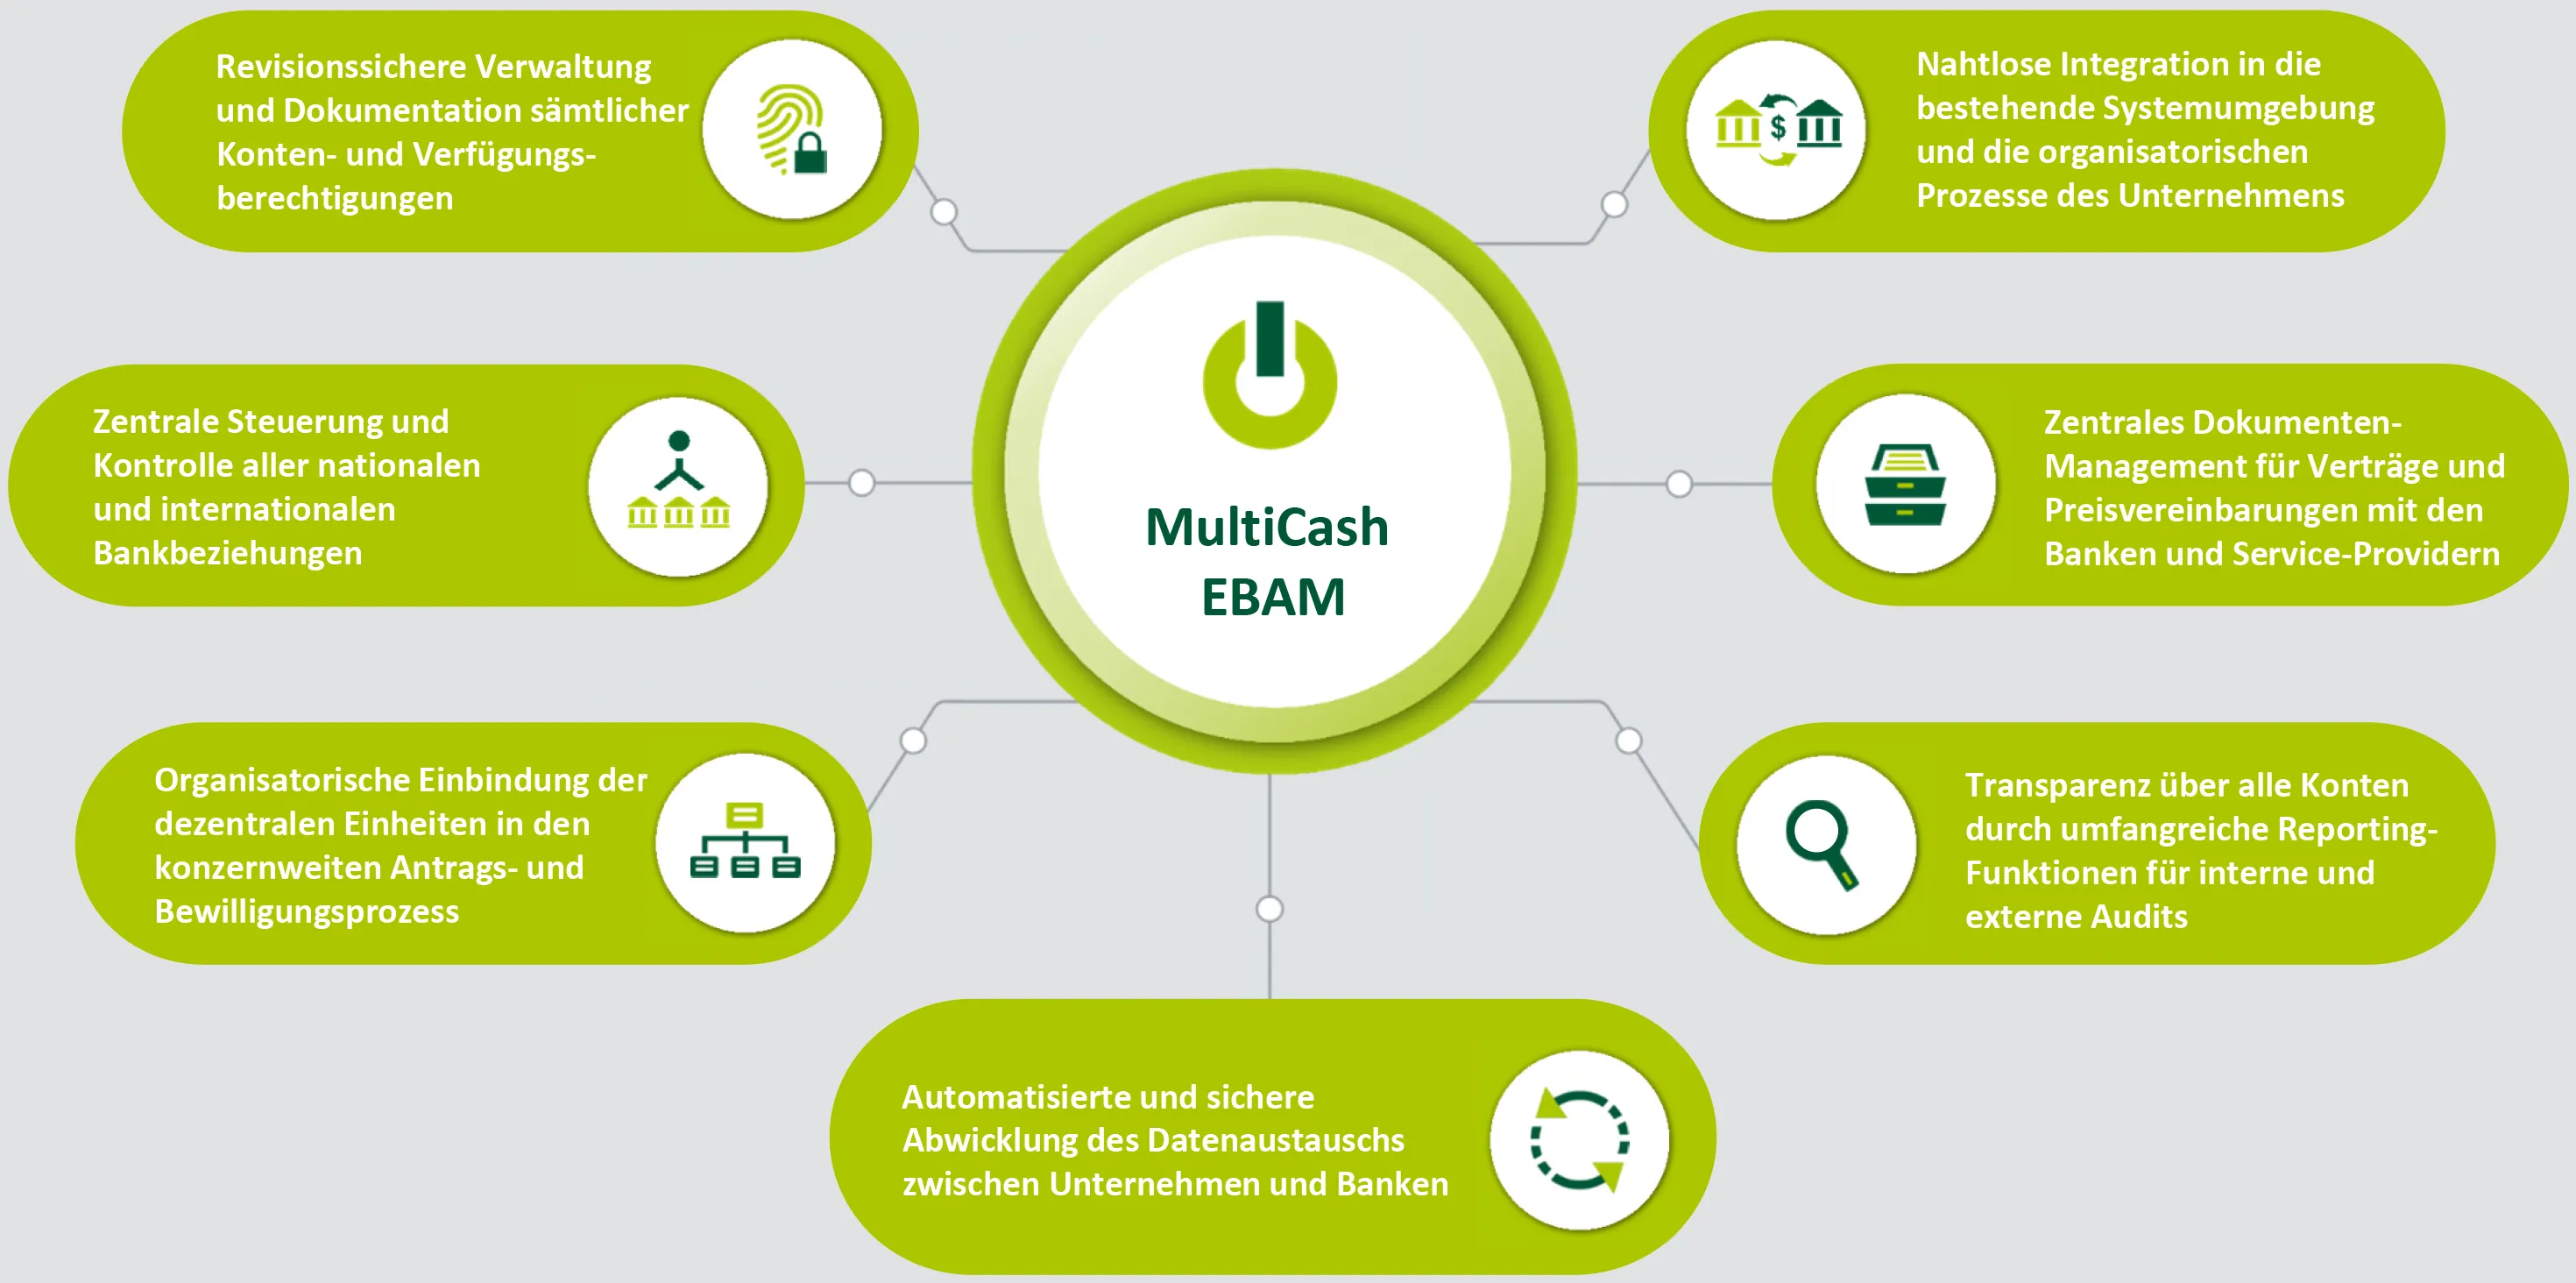 Die Vorteile von MultiCash EBAM auf einen Blick